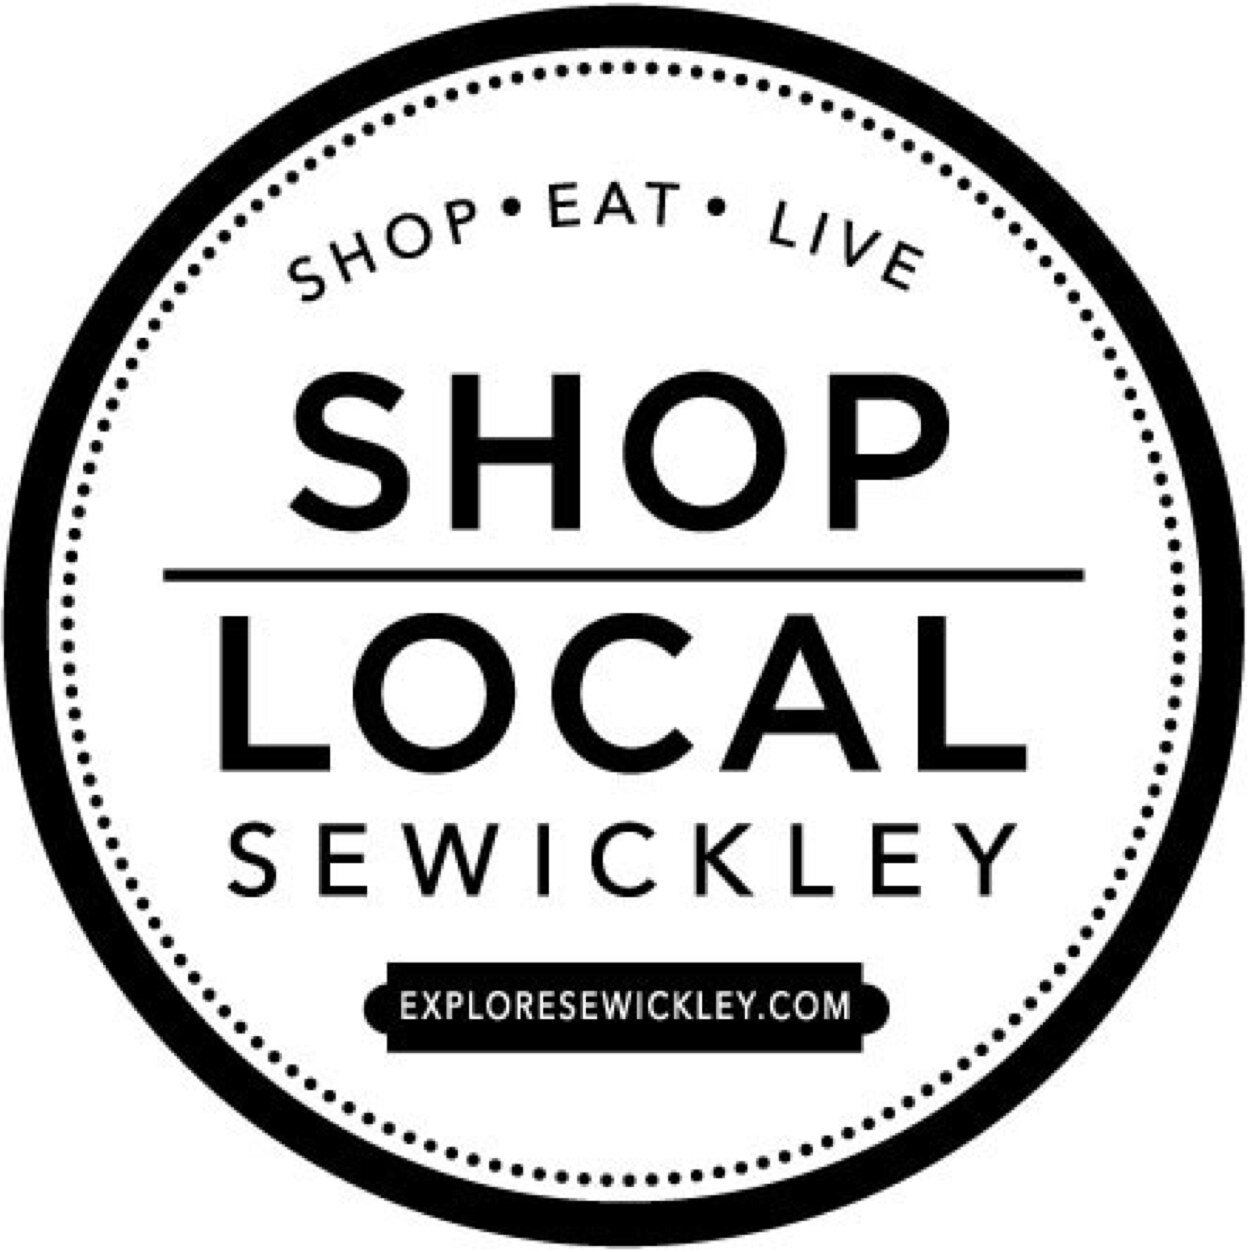 Shop Small, Love Local. Explore #Sewickley